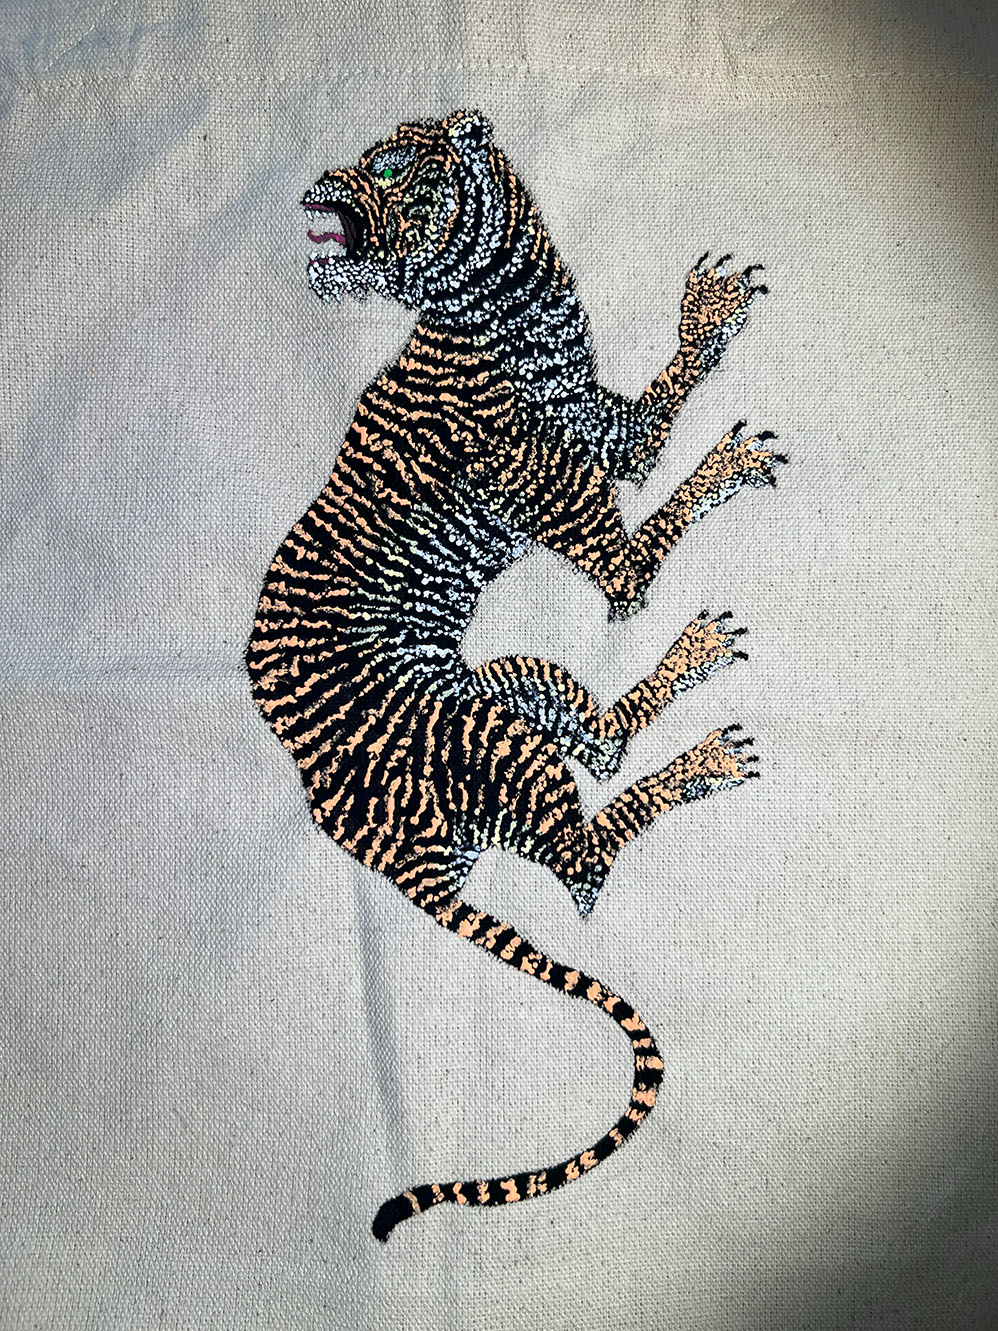 tiger bag closeup